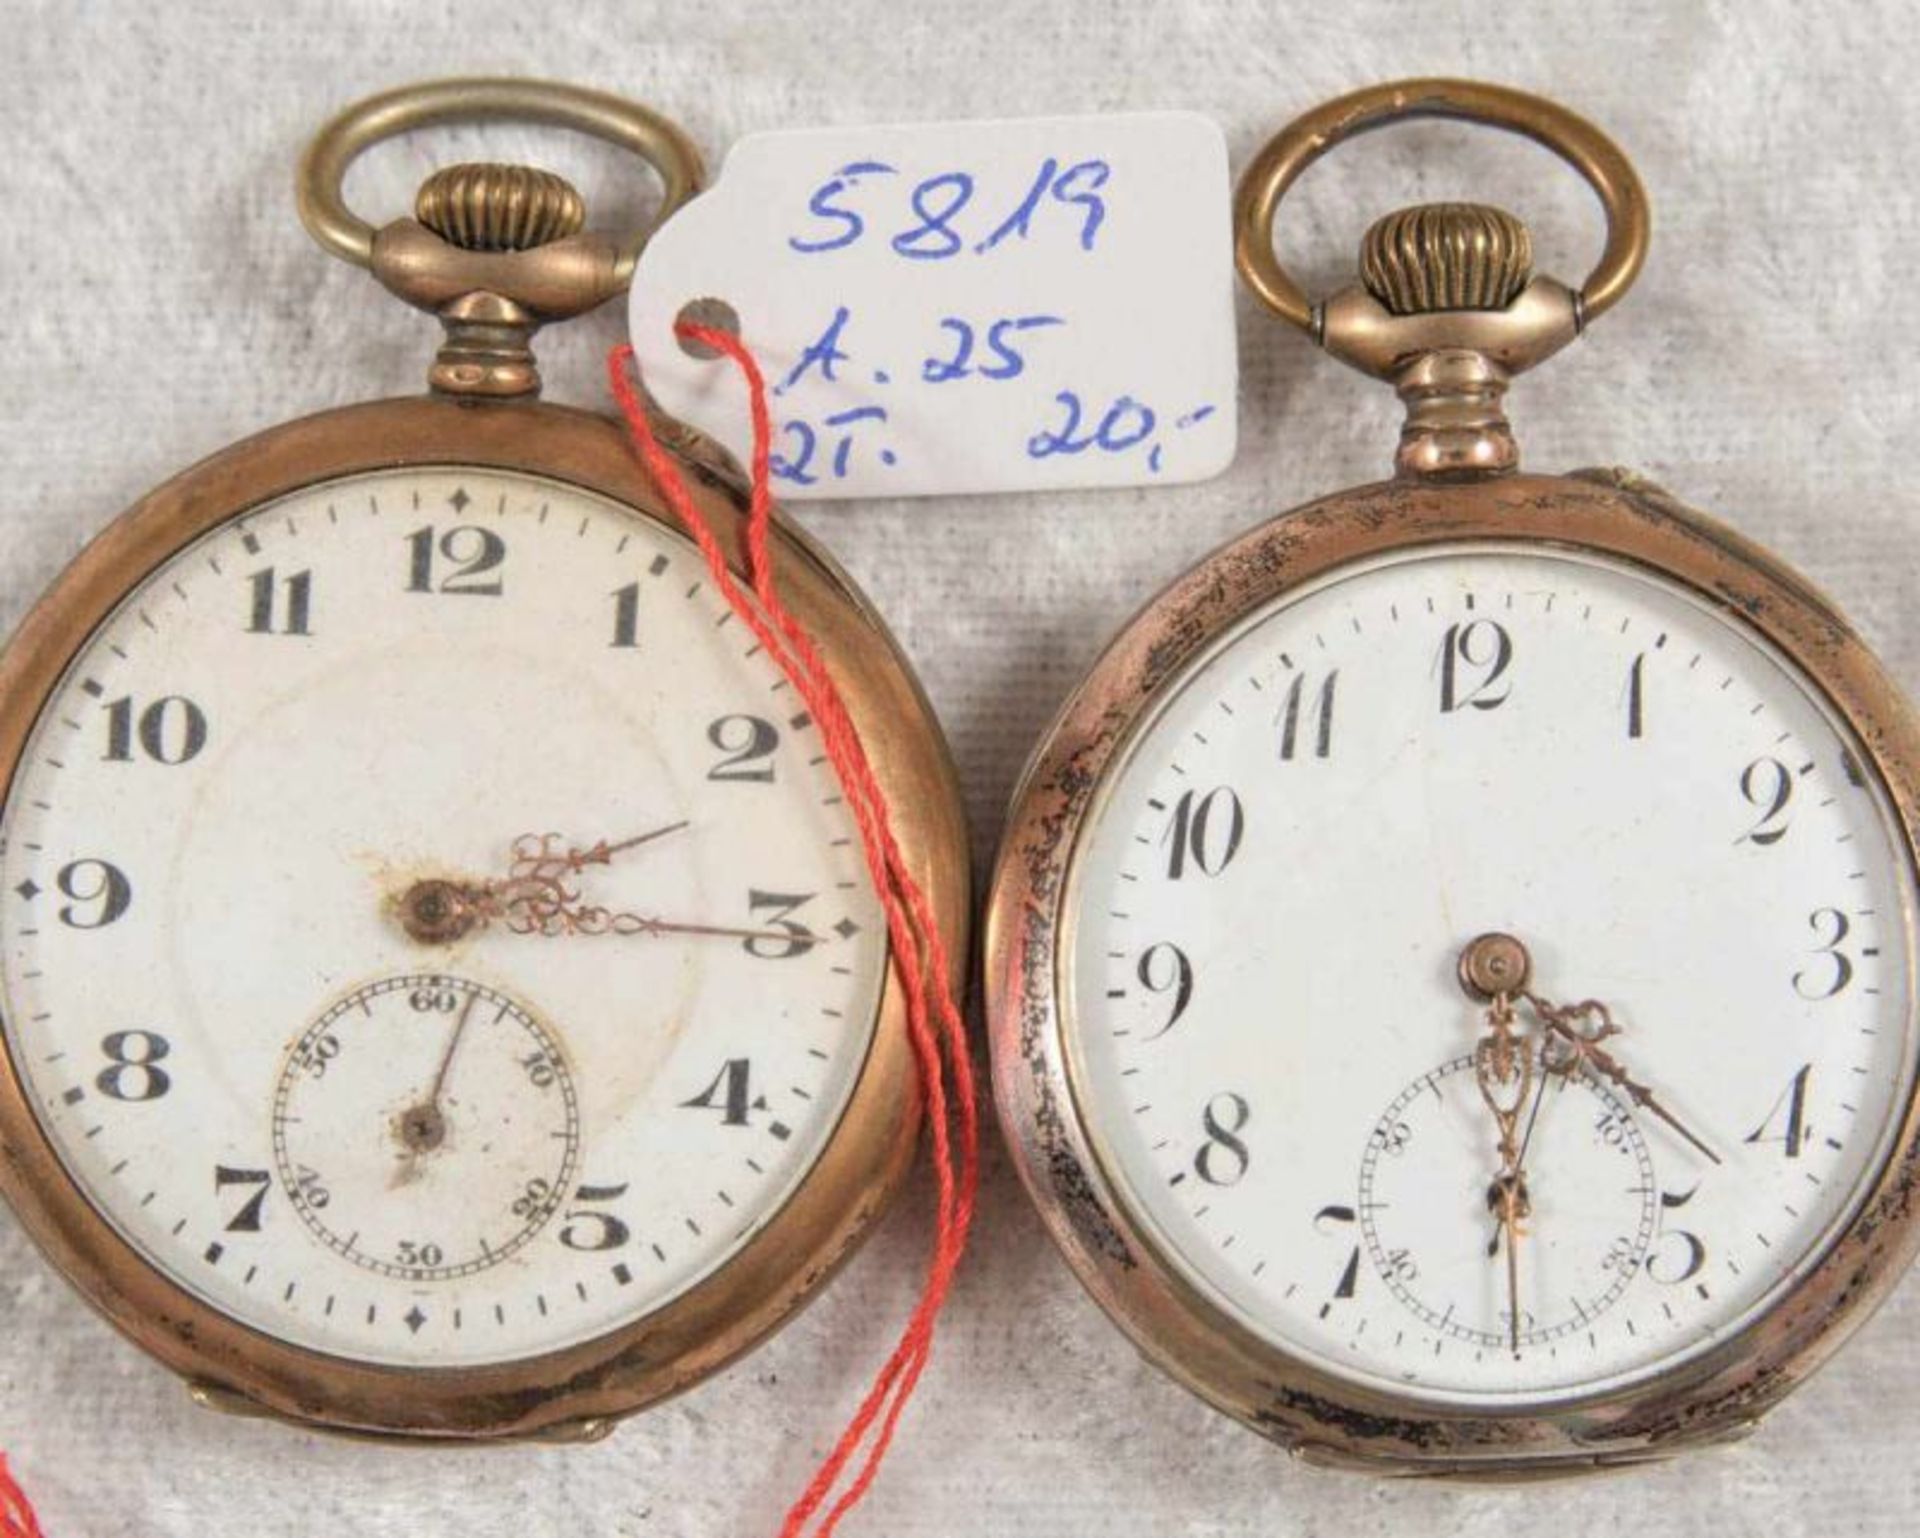 2 alte/antike Taschenuhren. Silbergehäuse, ungeprüft. - Bild 12 aus 20